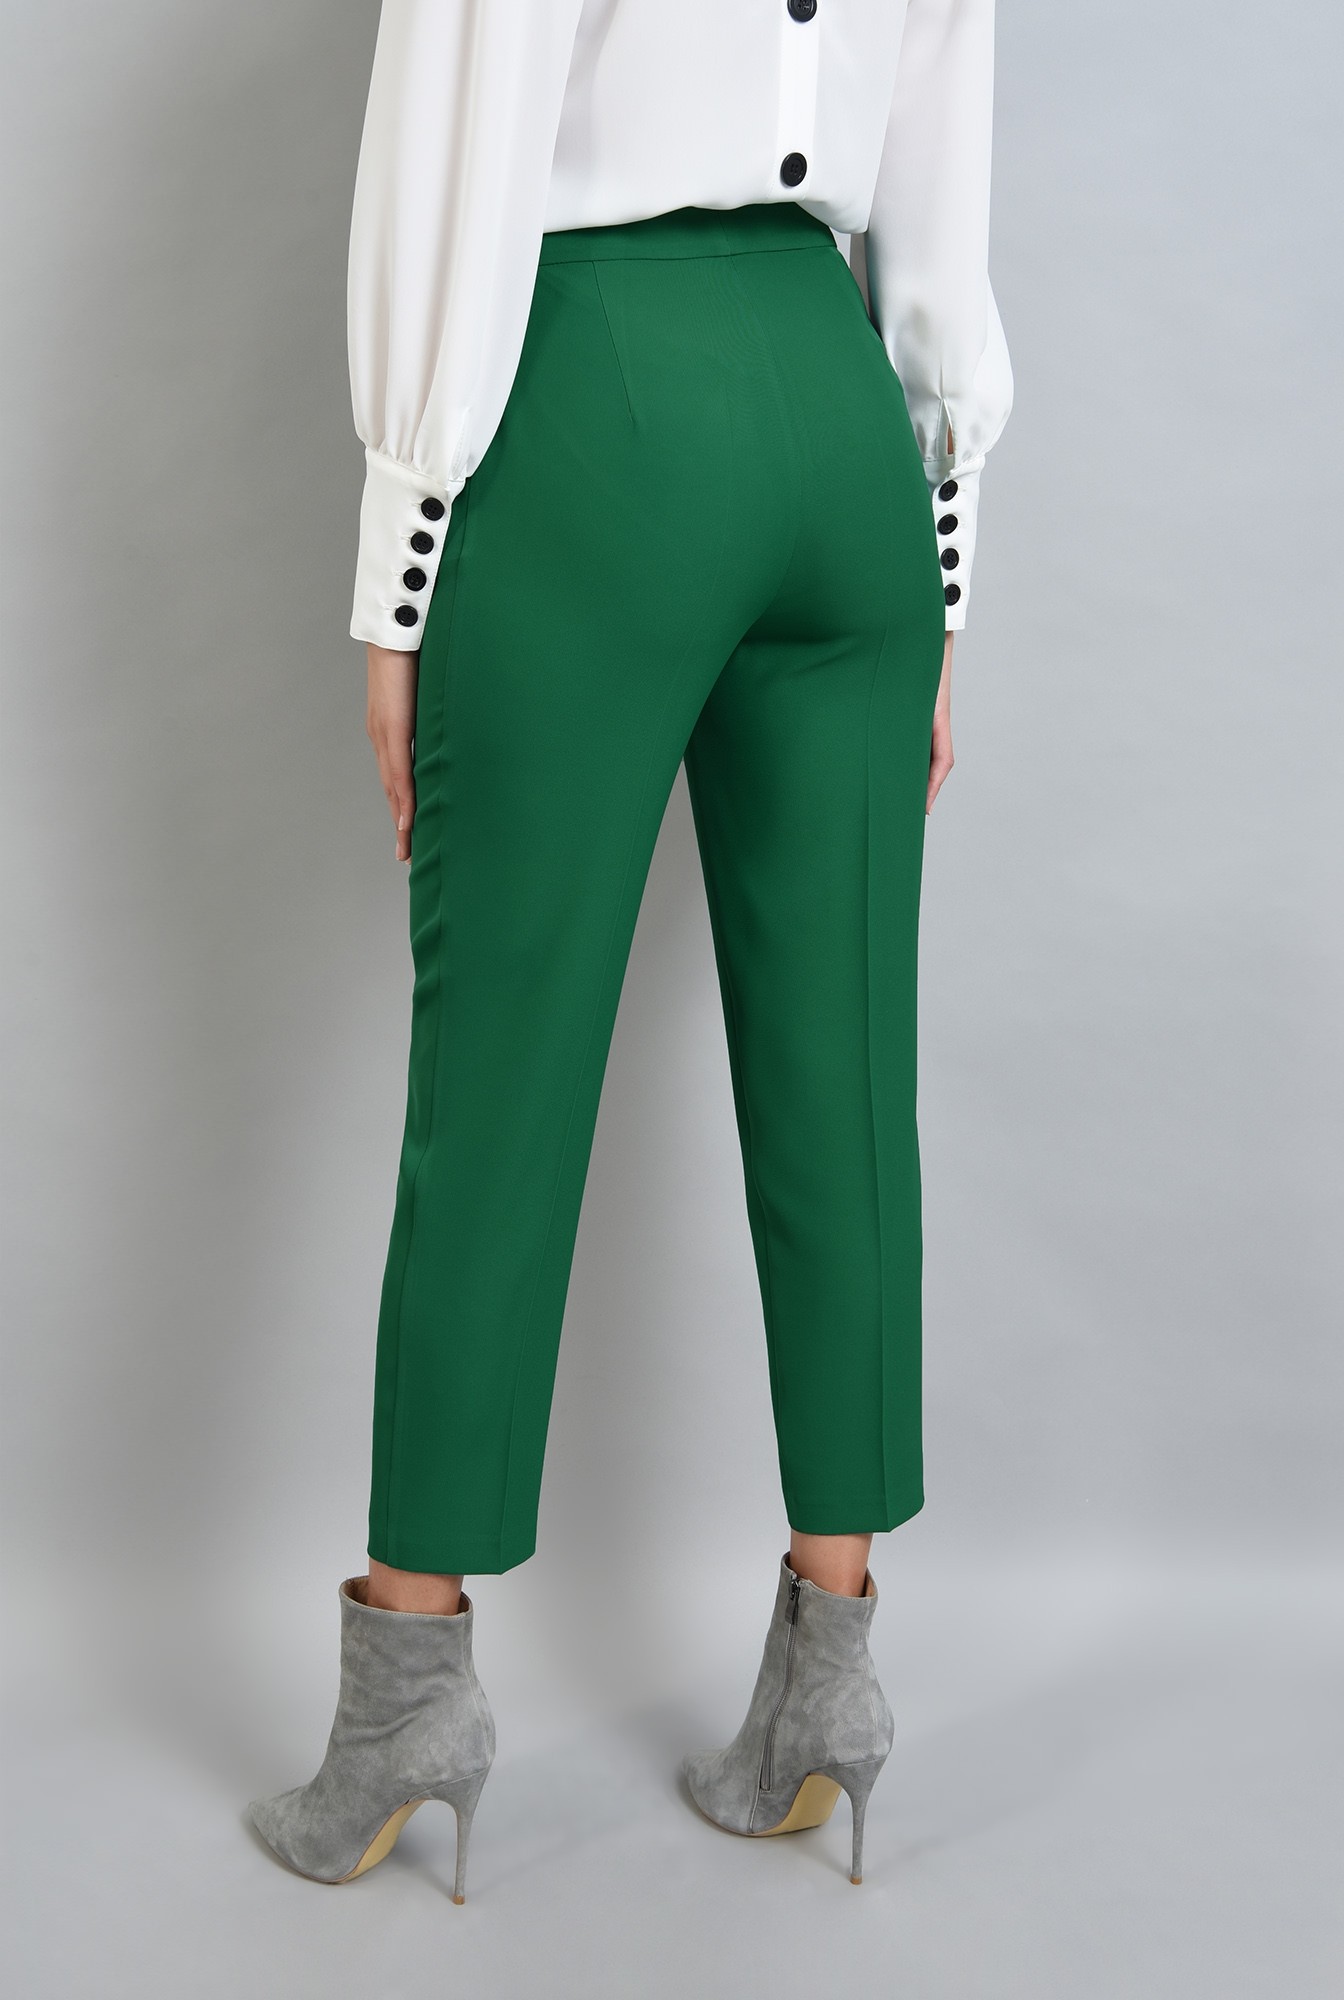 2 - 360 - pantaloni verzi, conici, cu buzunare laterale